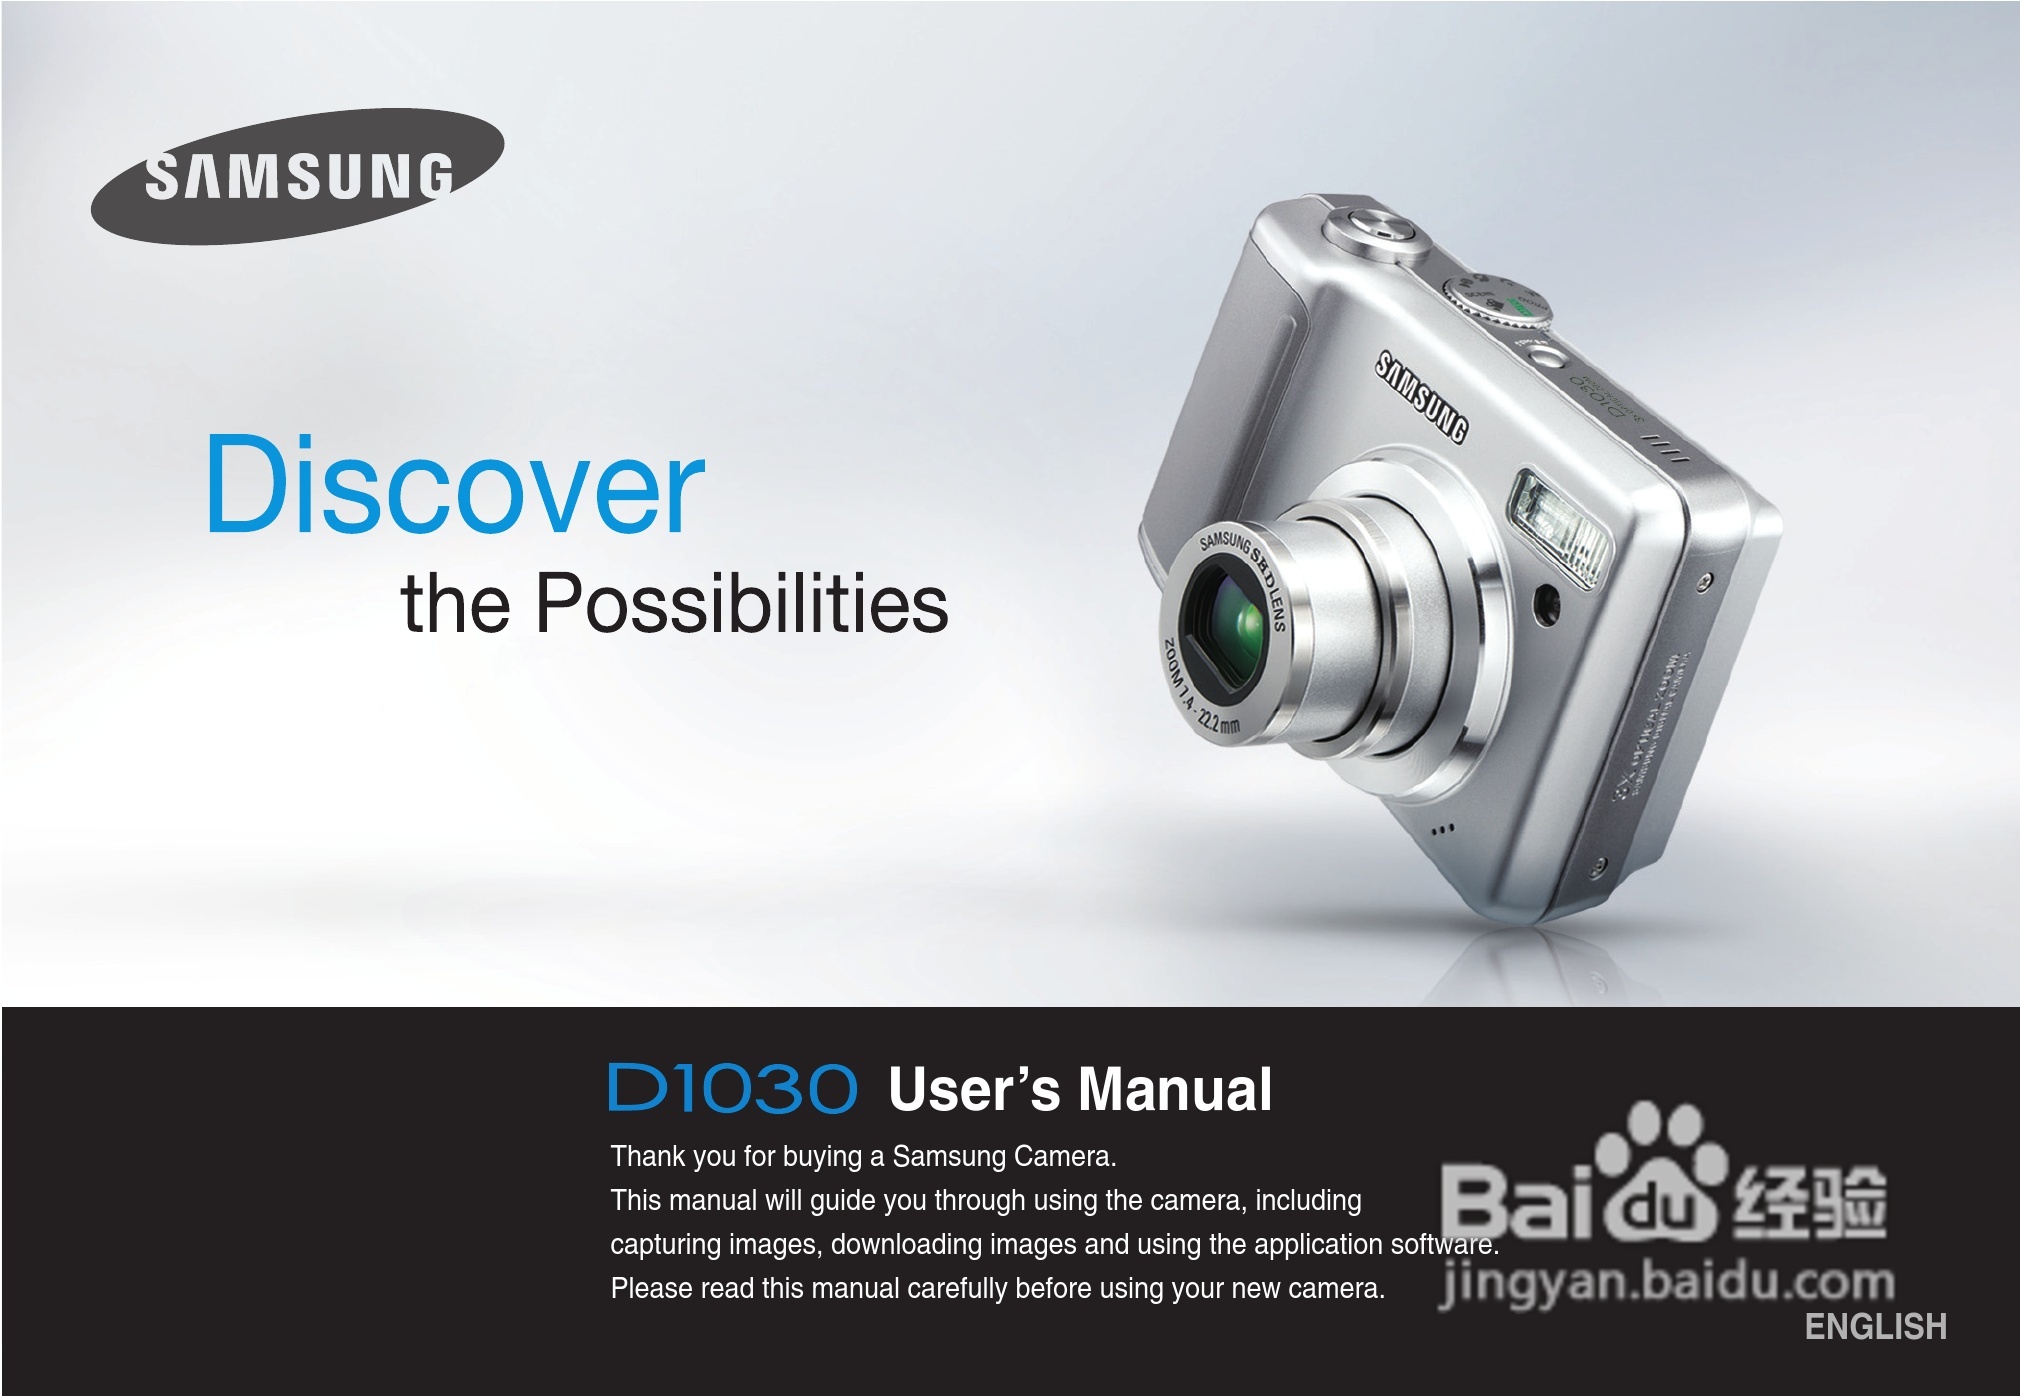 本篇为《三星d1030数码相机使用说明书,主要介绍该产品的使用方法